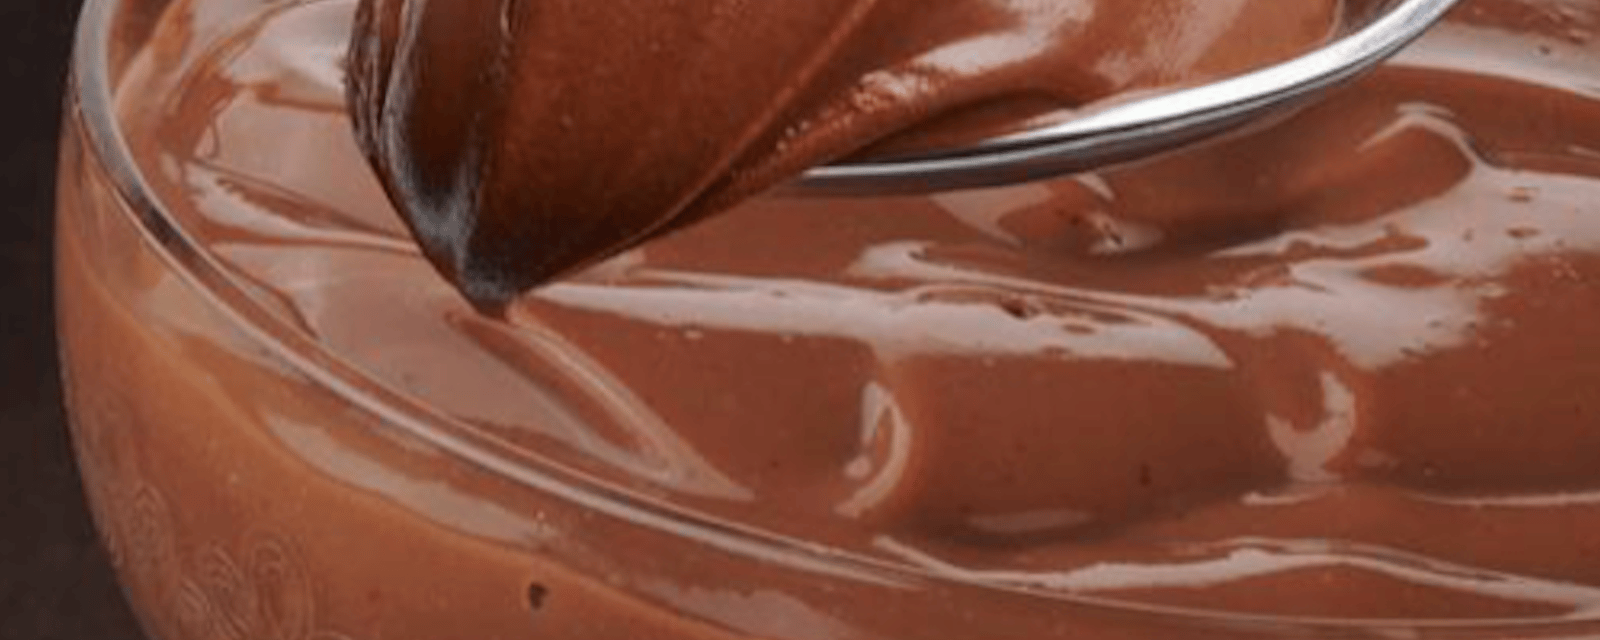 La meilleure recette de pouding au chocolat maison